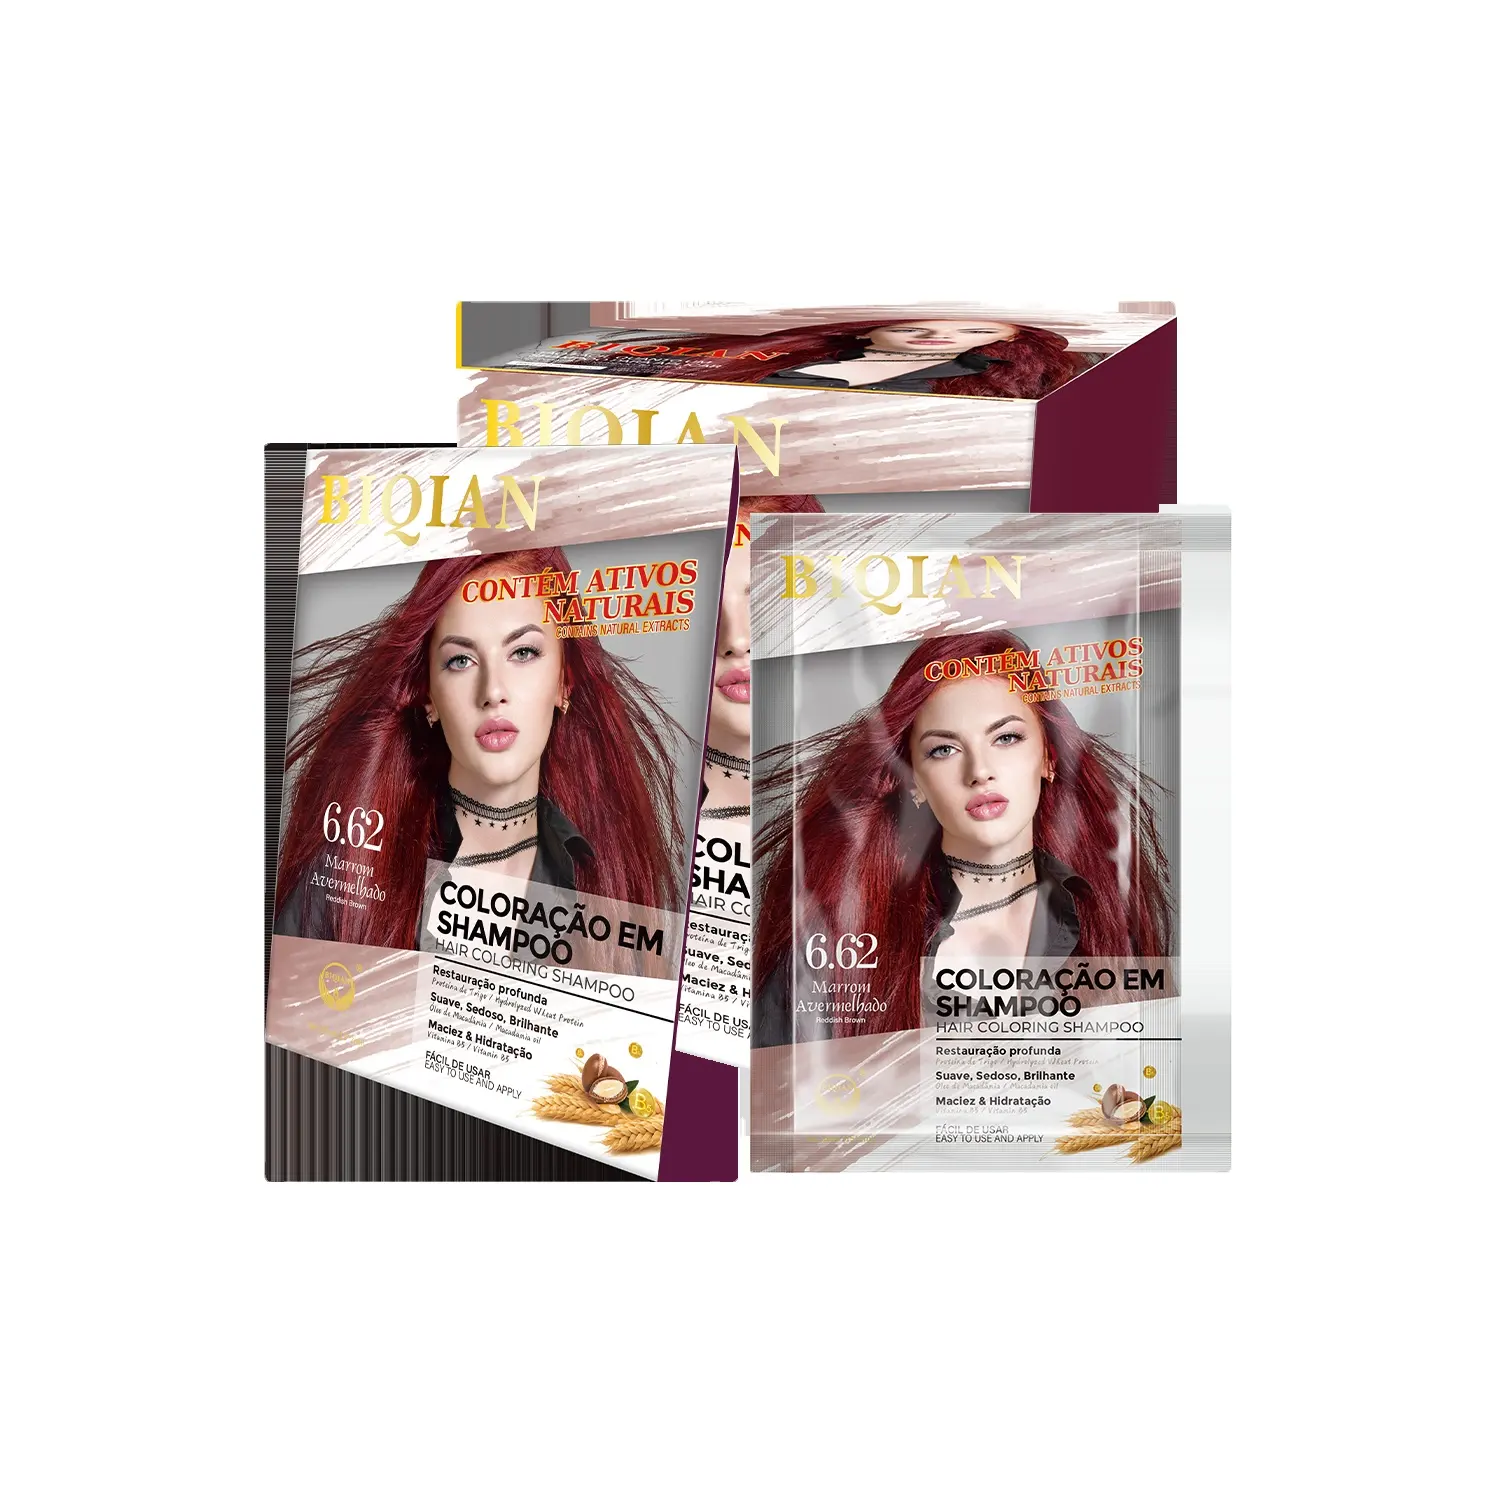 ODM BIQIAN Eigenmarke Haarprodukte Haarfärbungscreme und Shampoo Haarfarbe